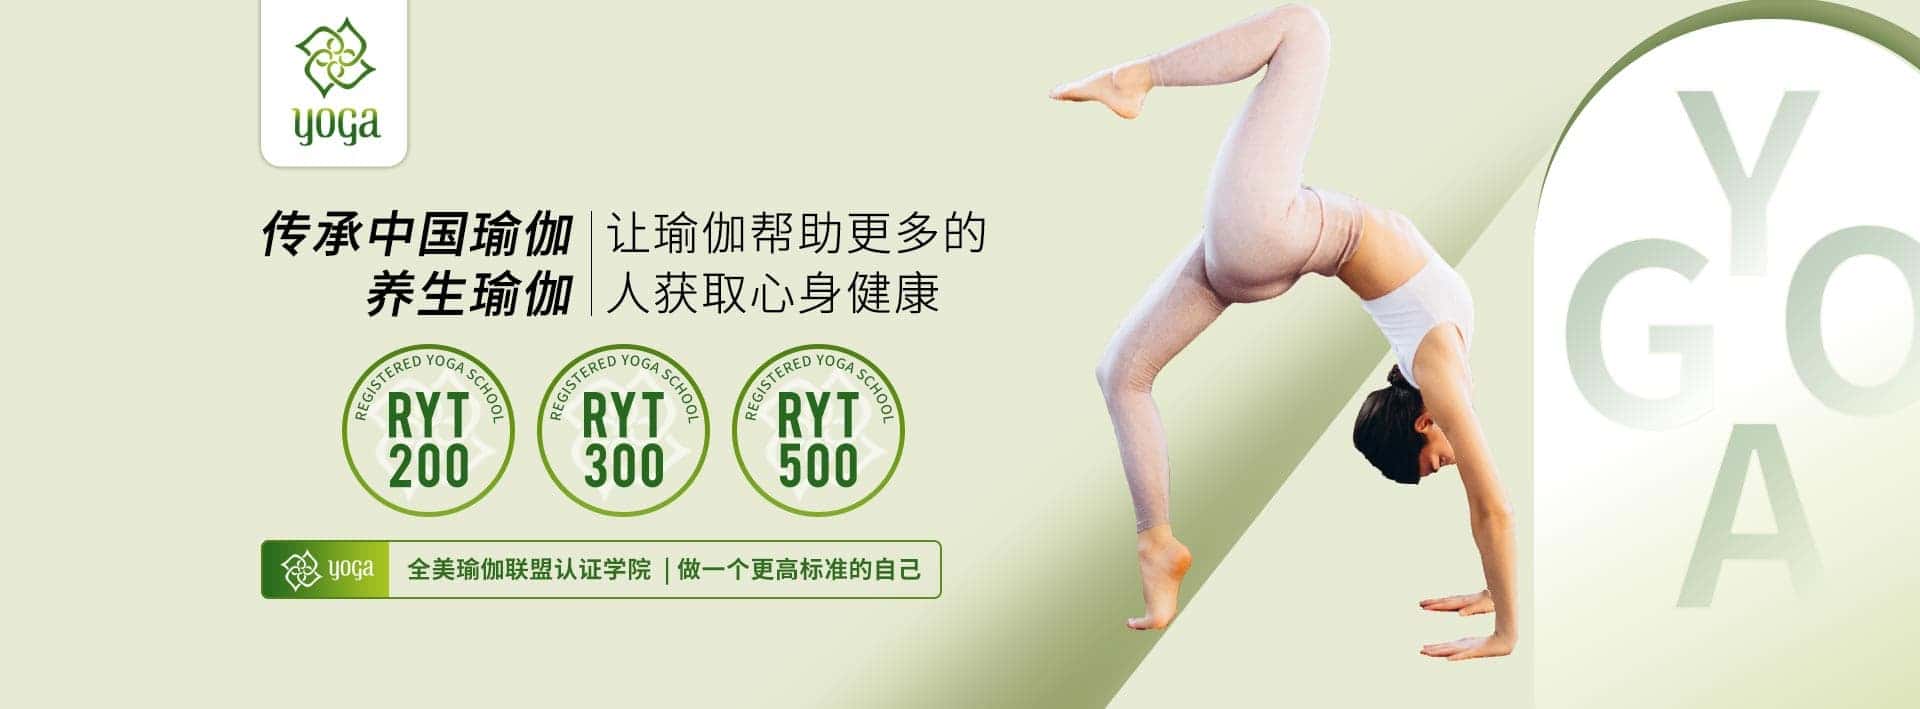 重庆冥想瑜伽健身有限公司